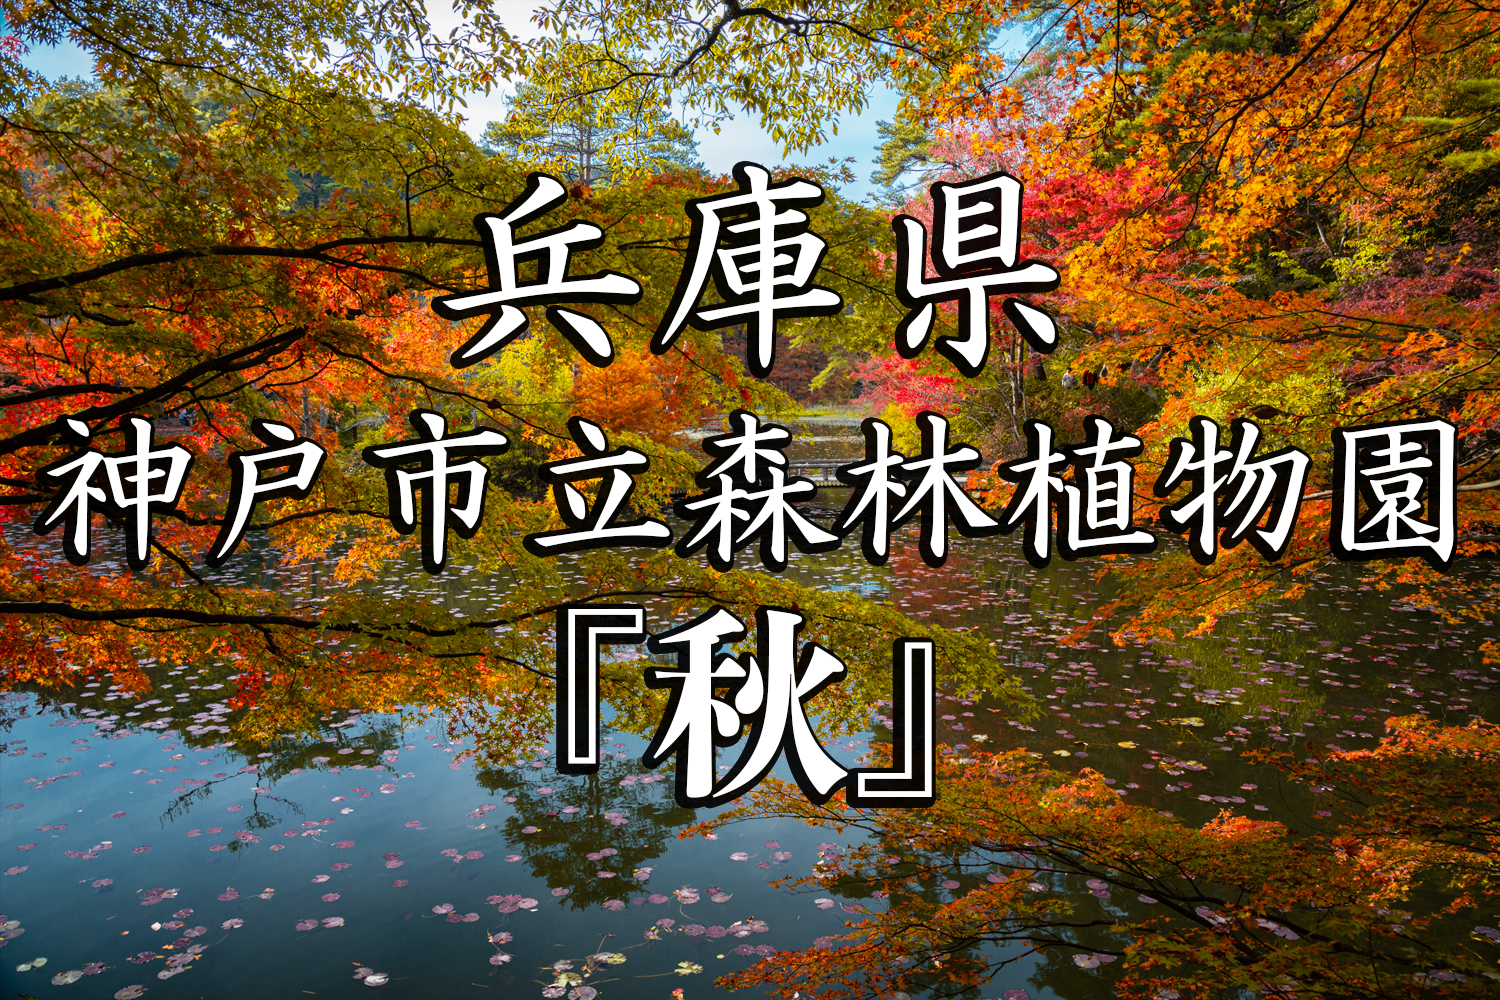 兵庫県 神戸市立森林植物園 園内が紅葉の景色に染まる秋におすすめの森林植物園 撮影した写真の紹介 アクセス情報や撮影ポイントなど 写真や映像で紹介する関西 近畿の絶景カメラ 観光スポット